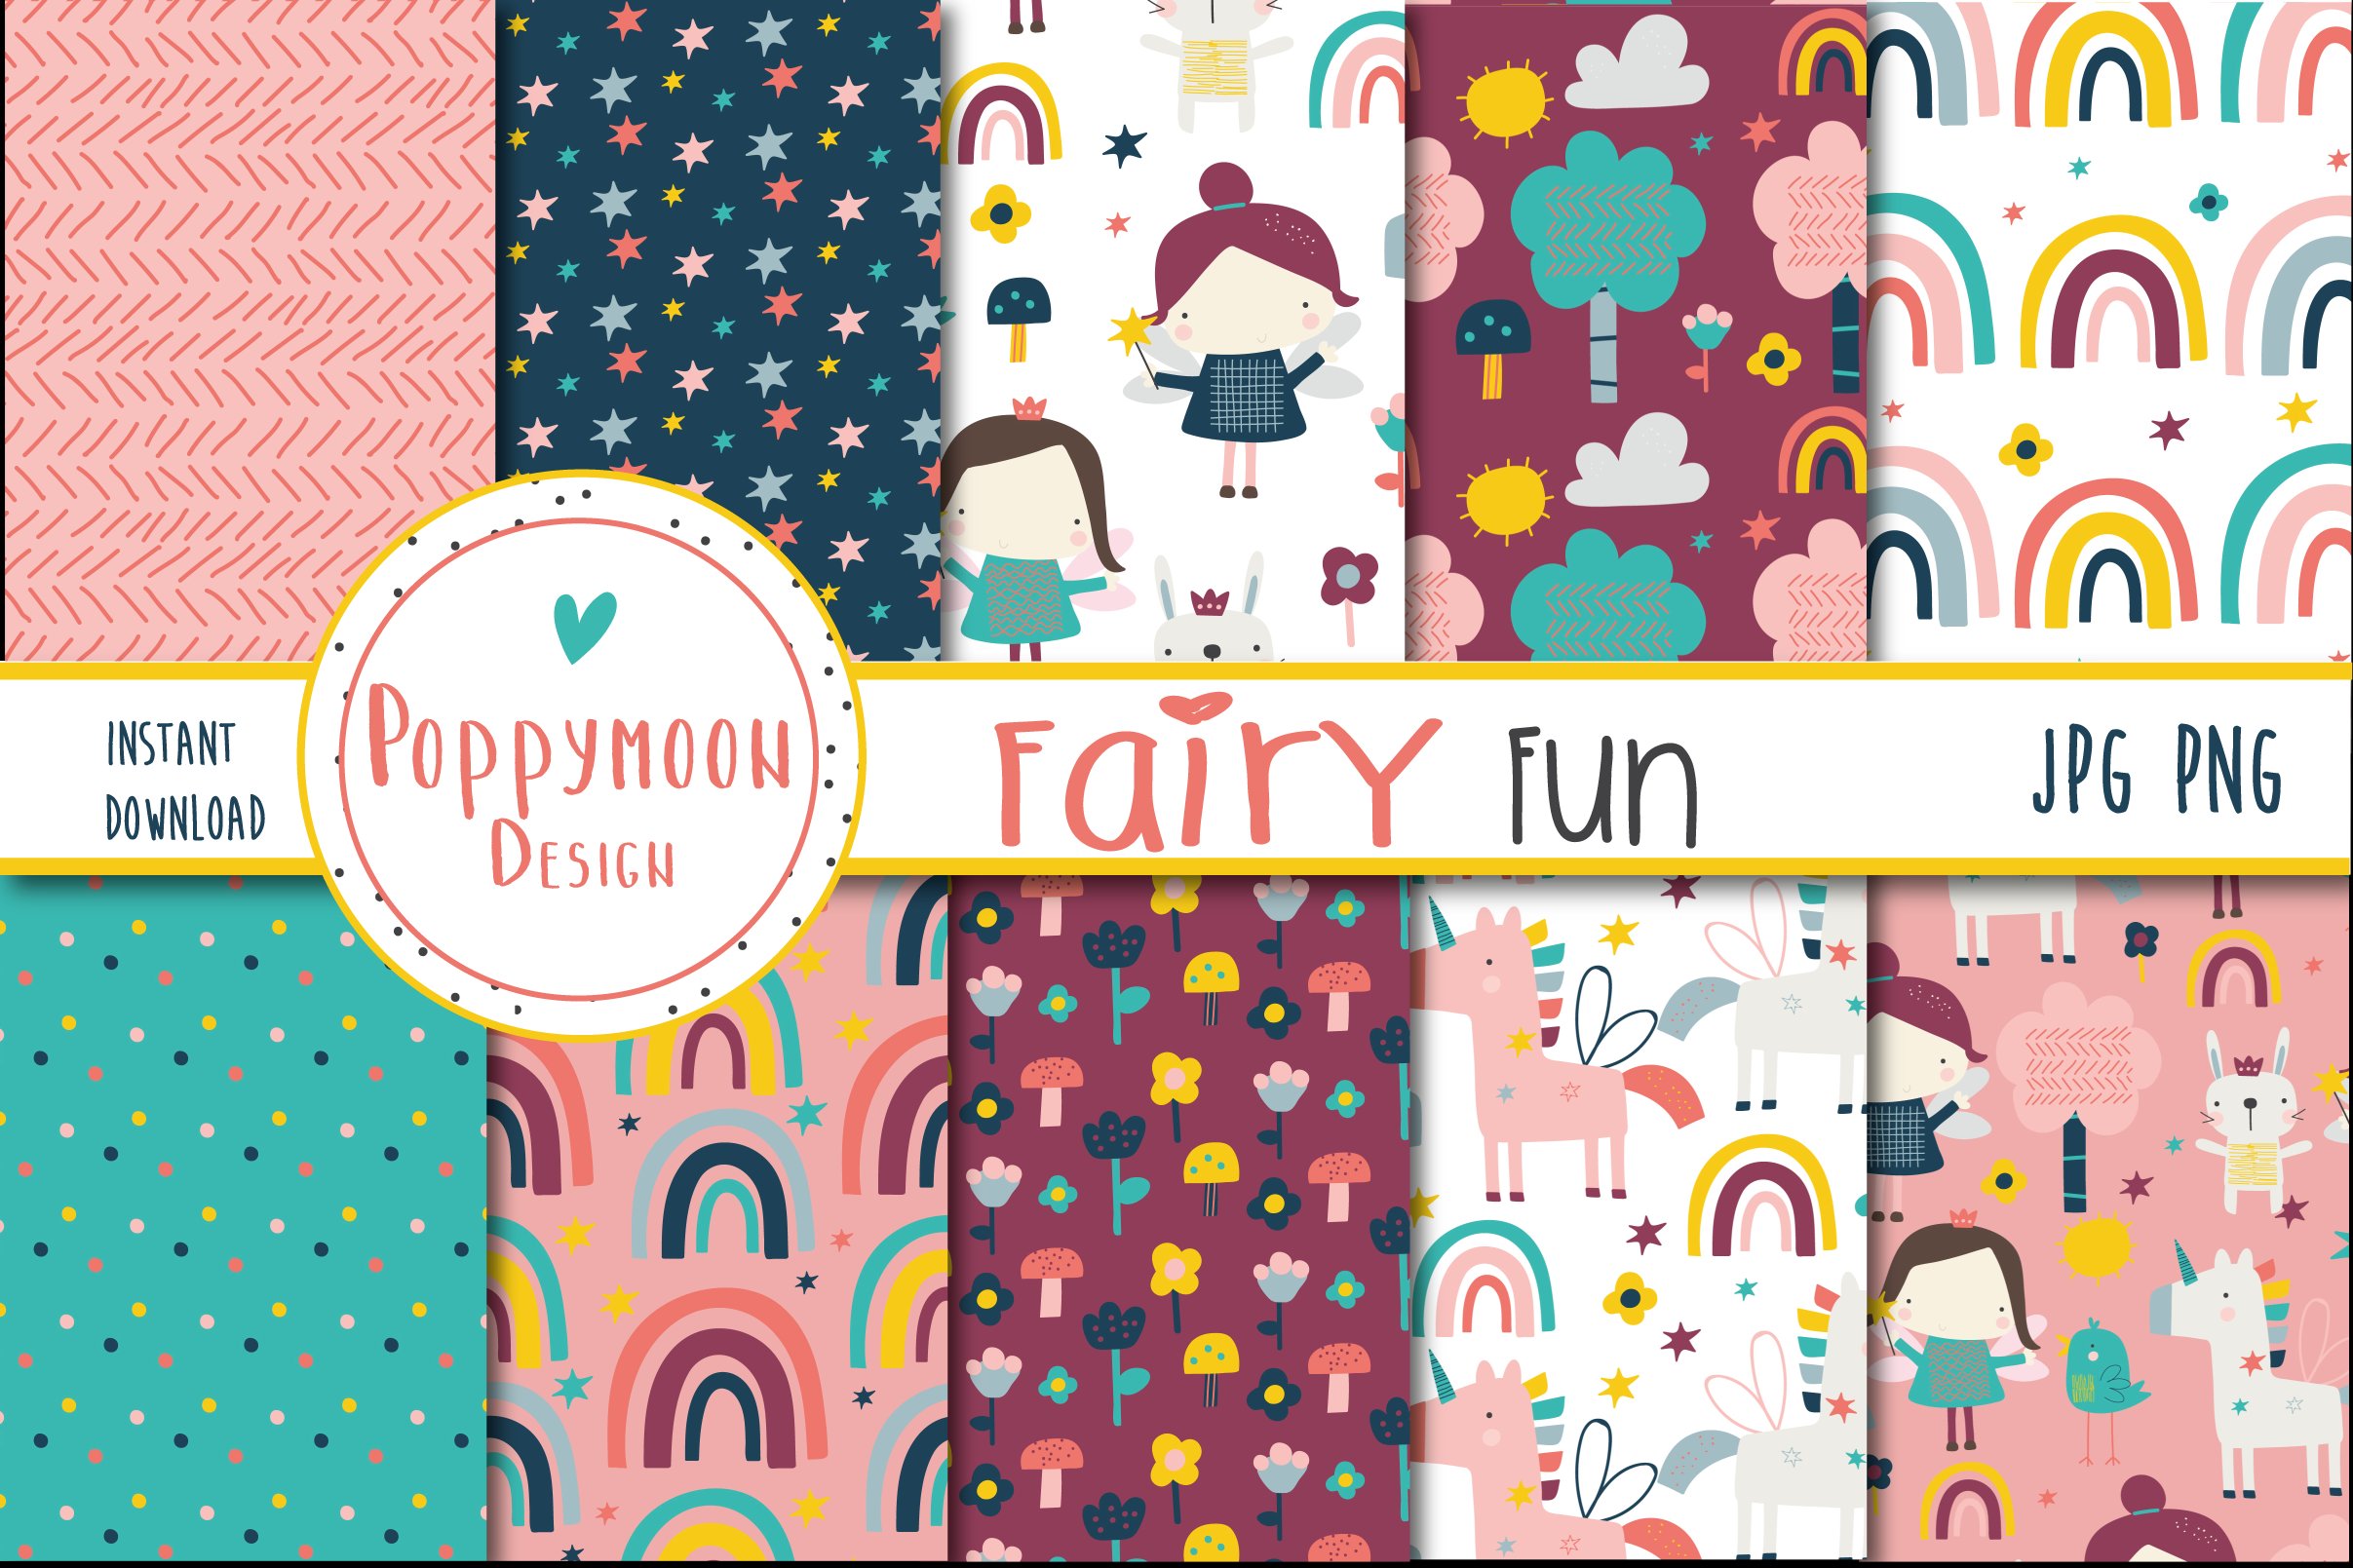 Fairy Fun paper cover image.